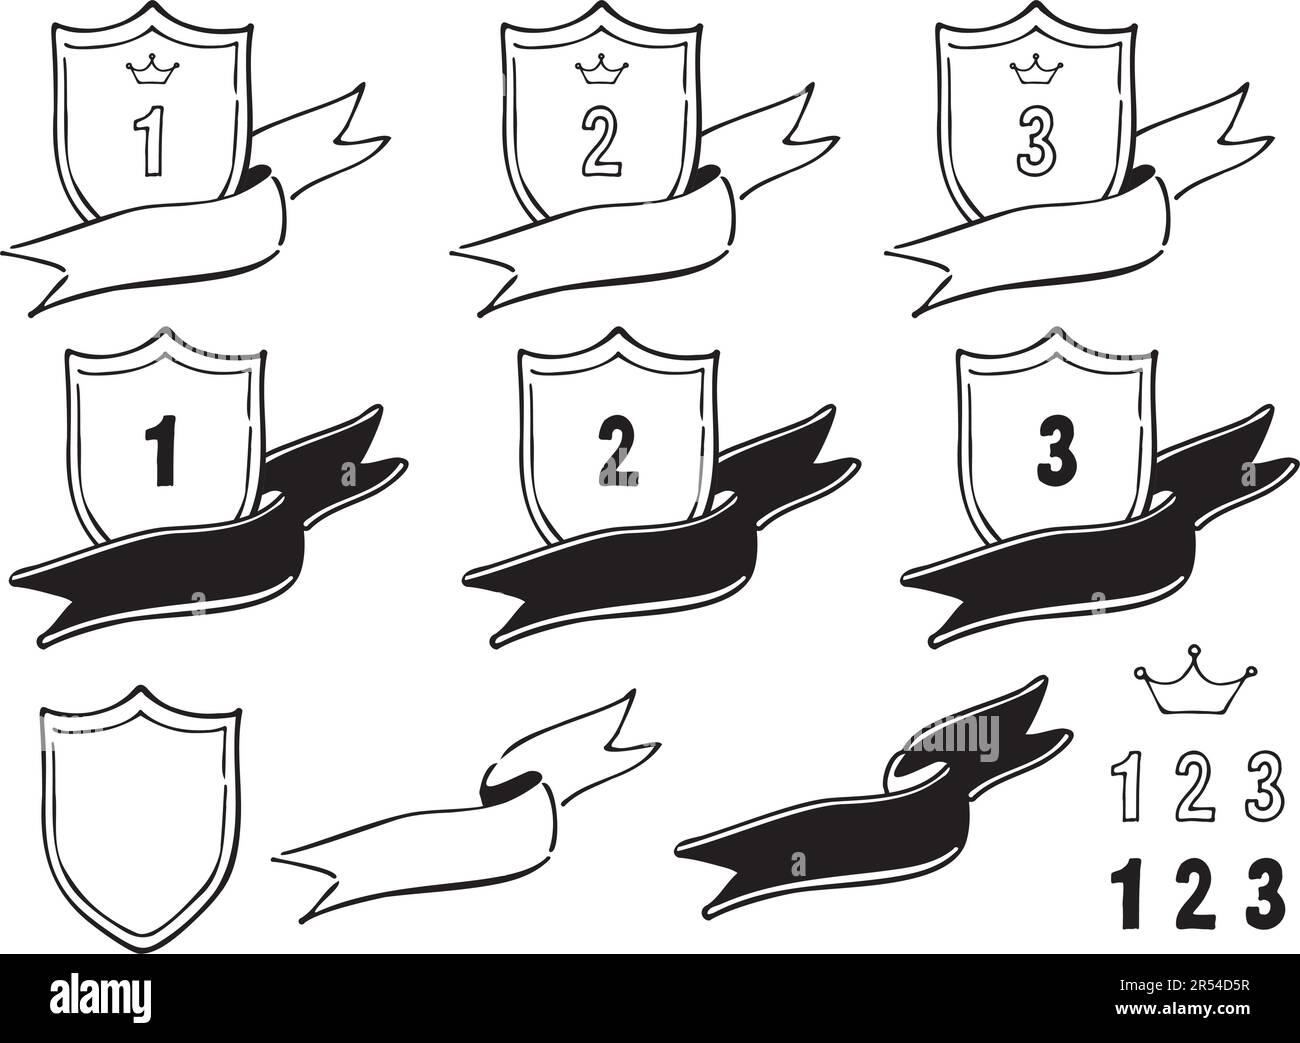 Ranking-Material für Schilde mit flatternden Bändern. Handgezeichnete Schwarzweiß-Strichzeichnungen. Stock Vektor